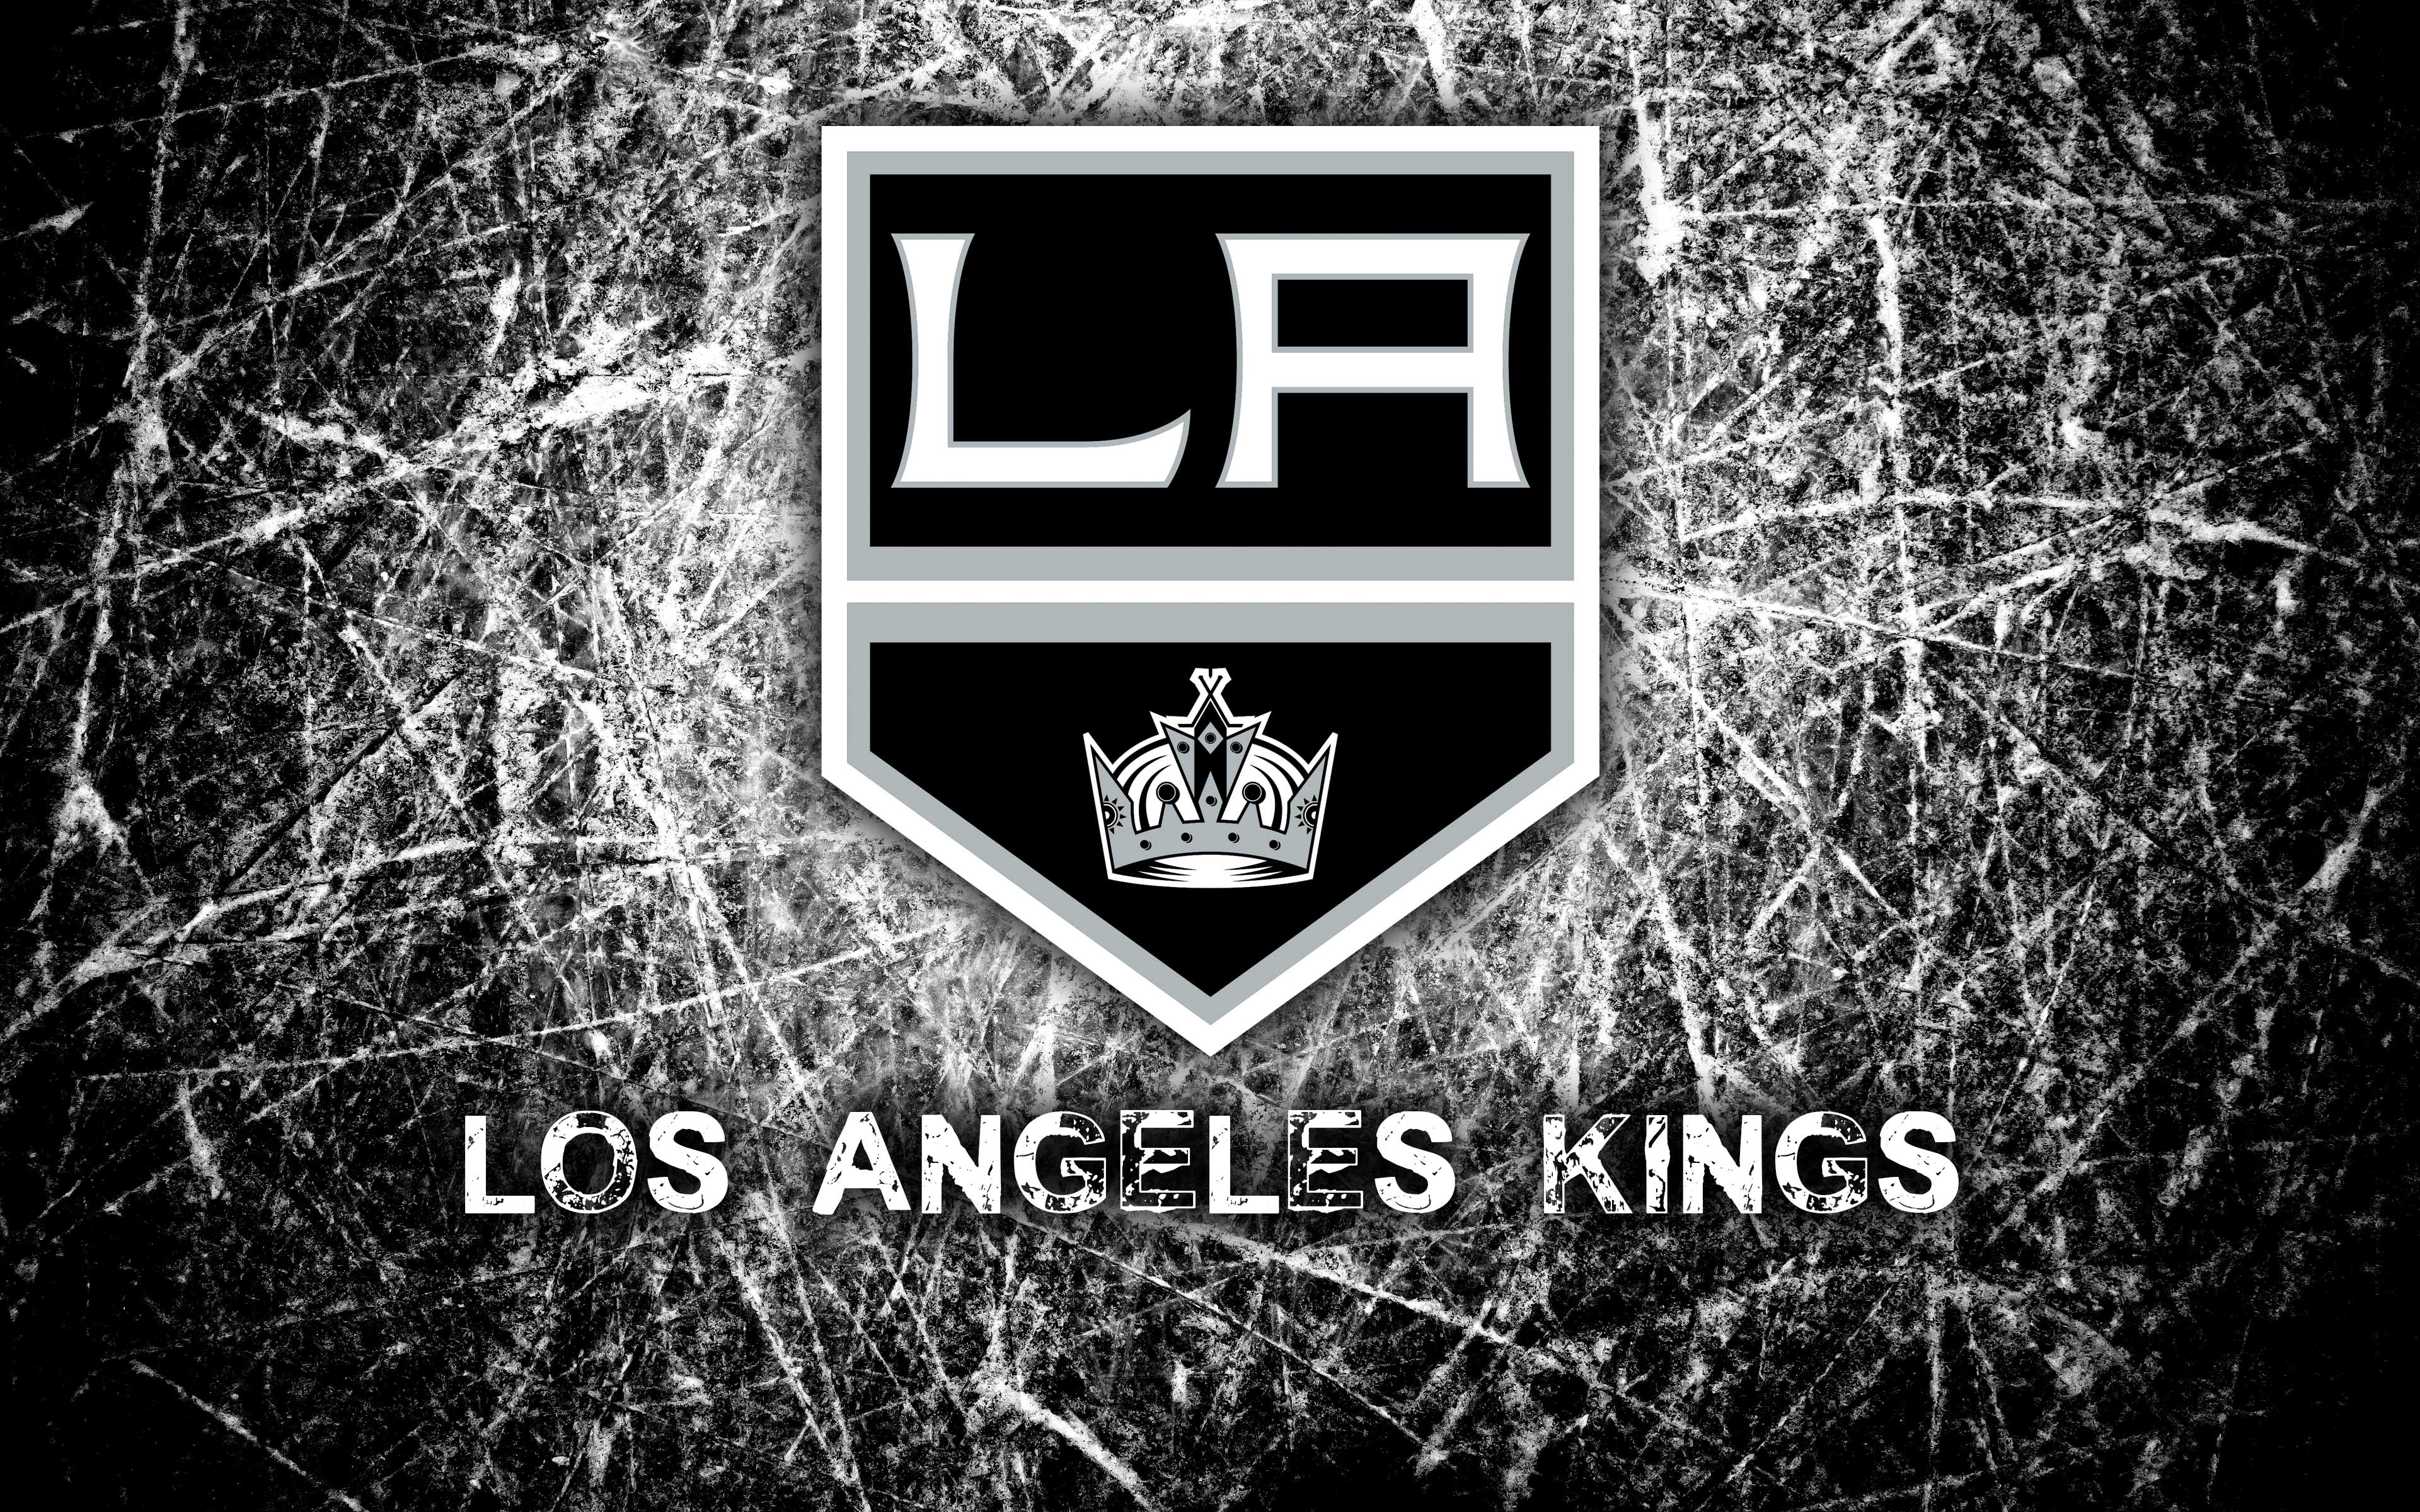 Лос анджелес хк. Хоккейный клуб Лос-Анджелес Кингз. Эмблема Лос Анджелес Кингз. Эмблема хоккейного клуба Лос Анджелес. Хк Лос Анджелес Кингз логотип.